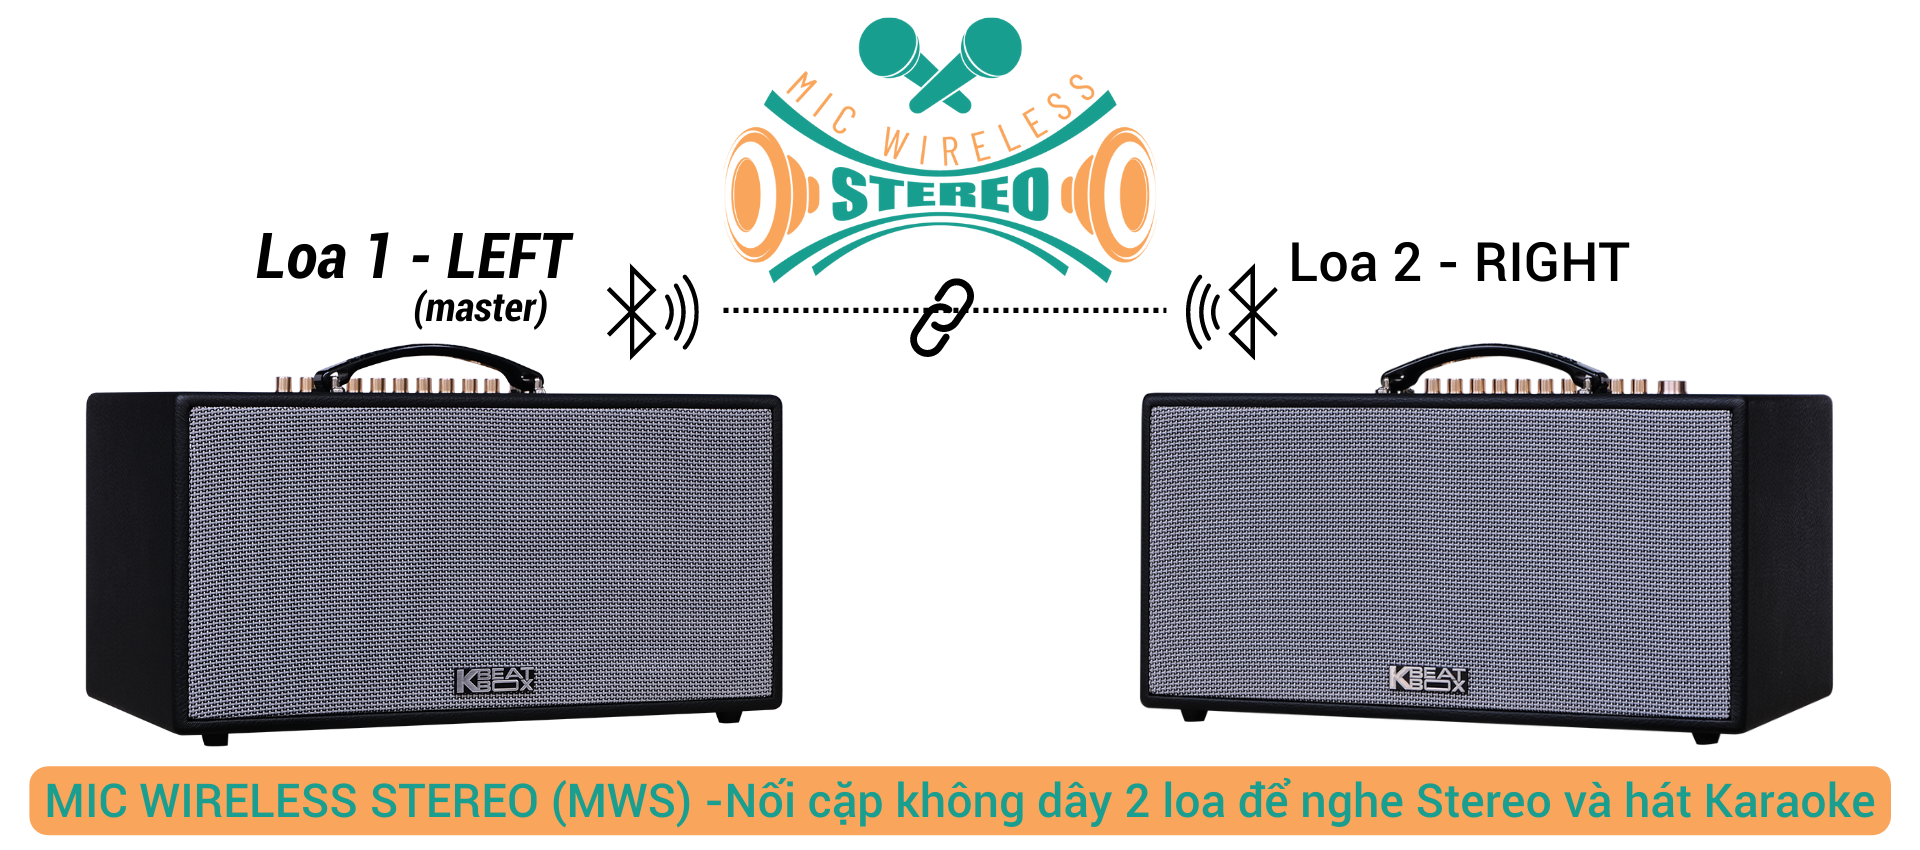 mic wireless stereo mws 20fc77b4fe9849cda2baeab4dc7c3f7c